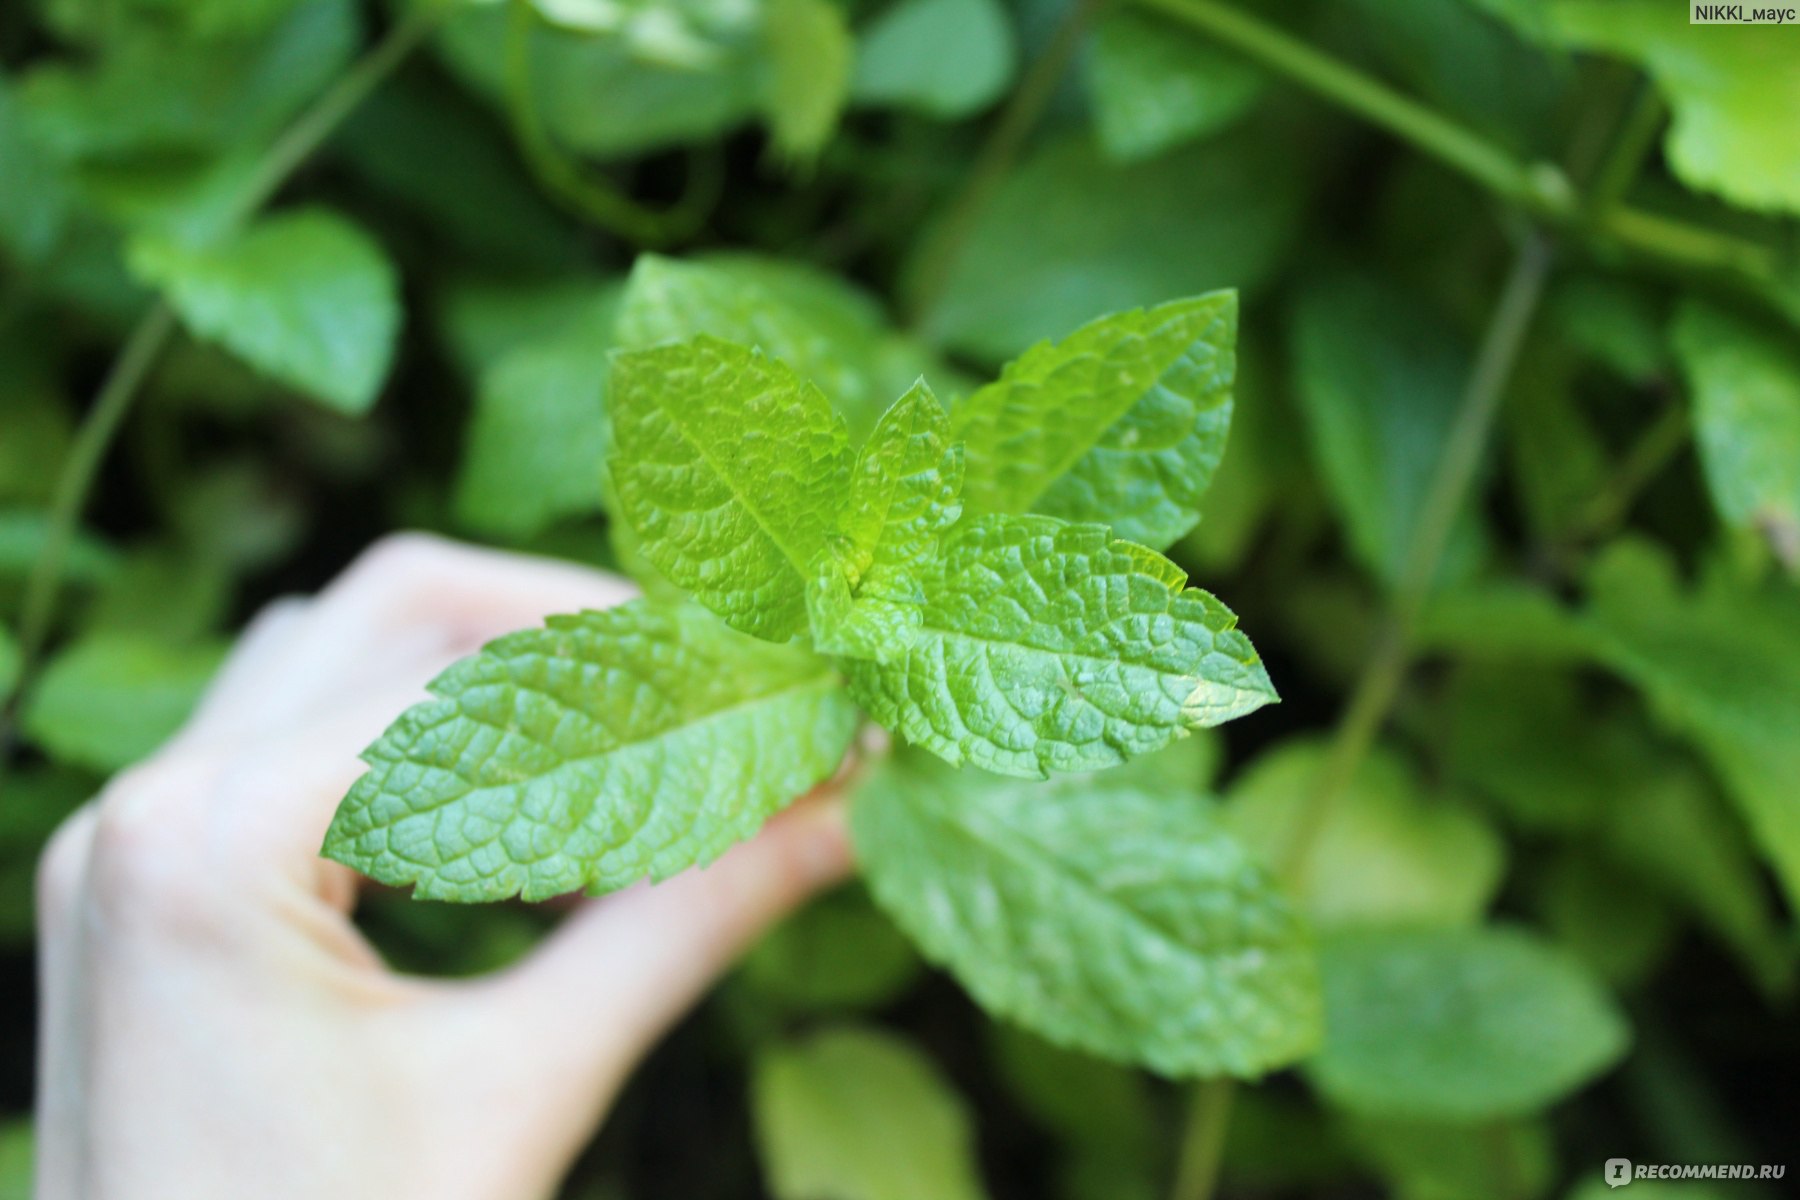 Лекарственные растения Мята Душистая - «Мои 5 способов применения мяты ➤Душистая и ароматная СЛАДКАЯ мята, как жвачка орбит, МММням!»